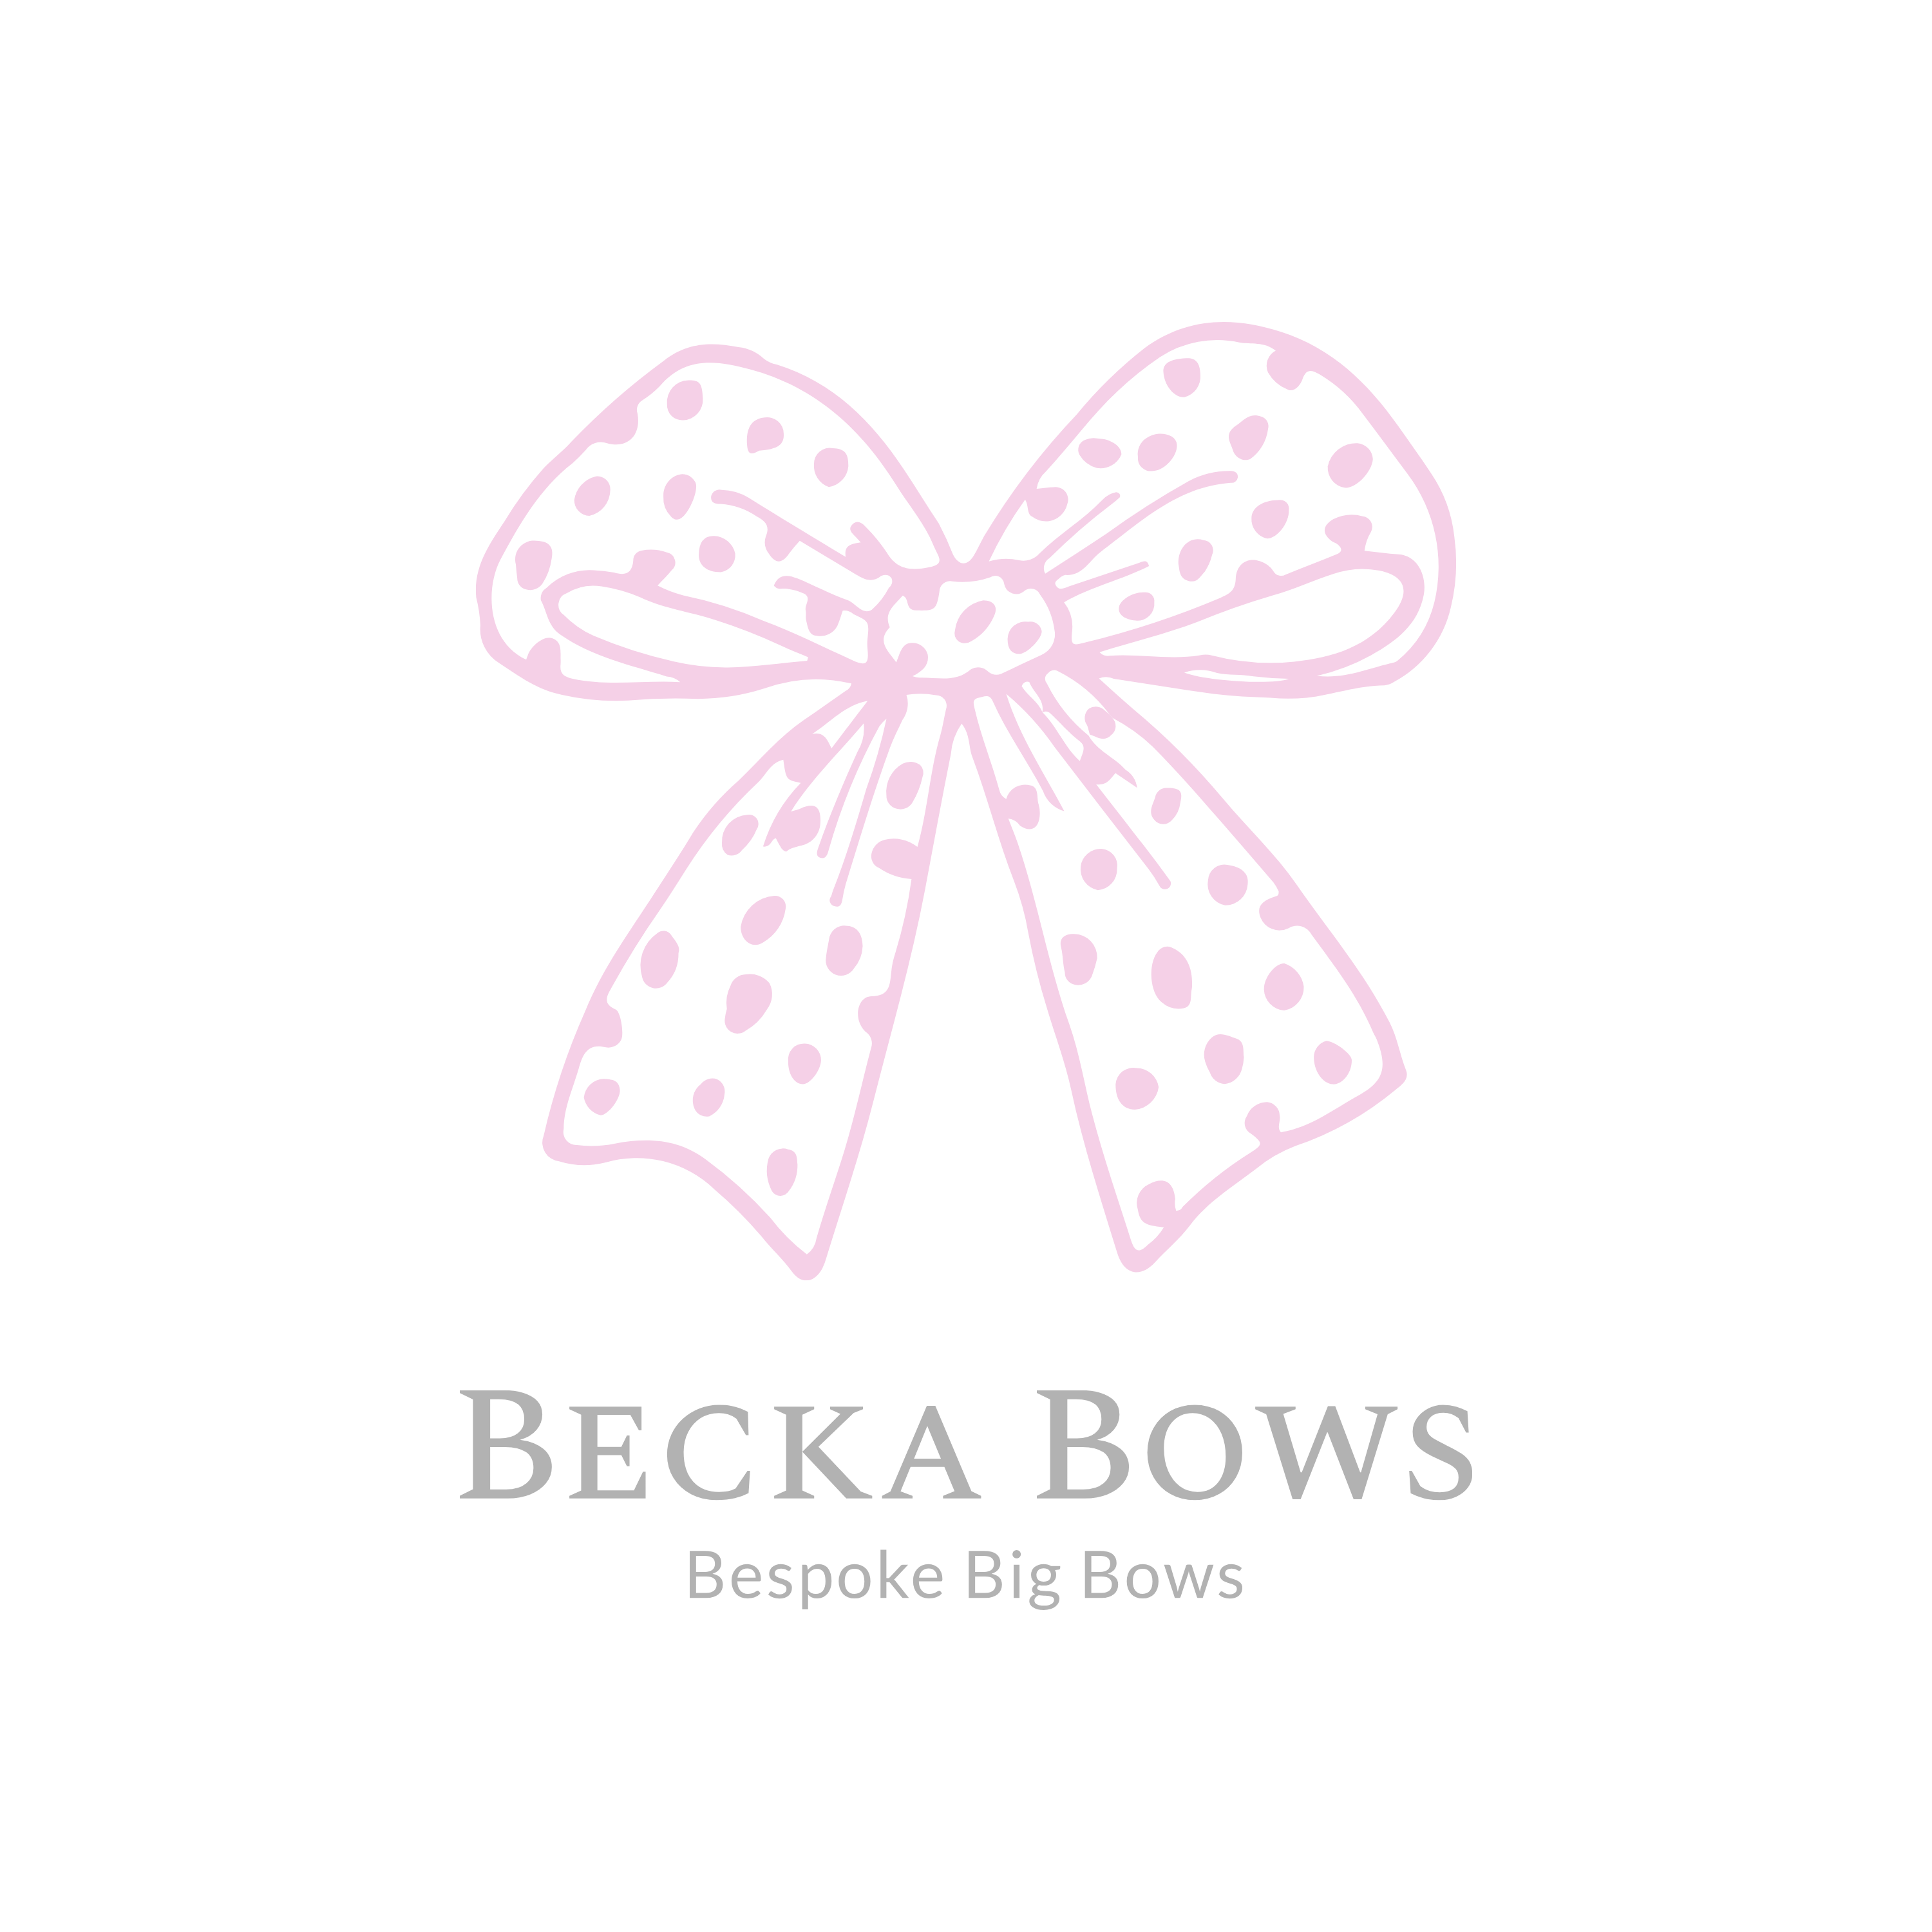 BeckaBows Ltd